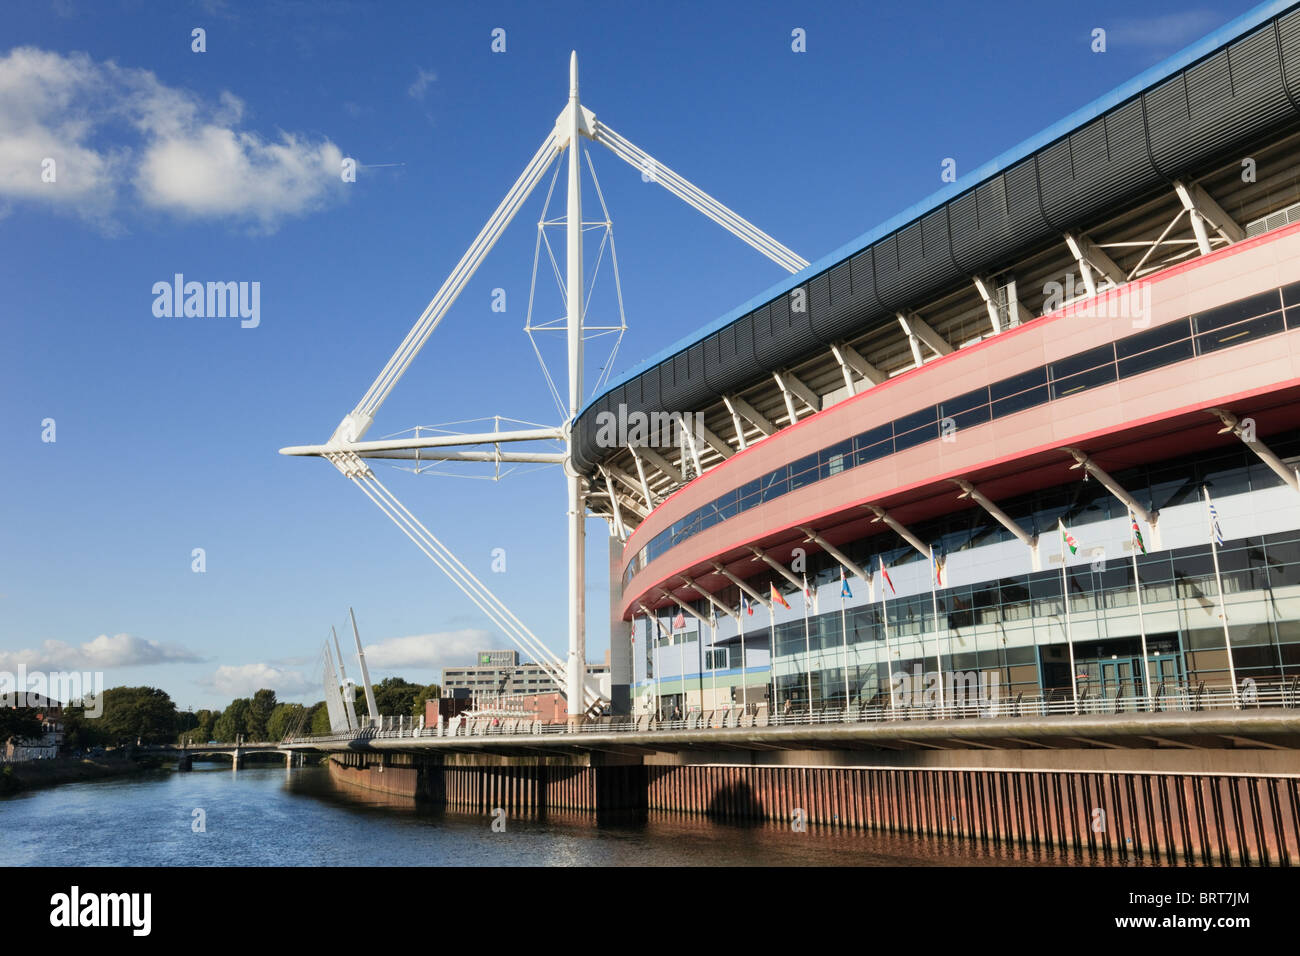 Principauté Stadium football et rugby national lieu au bord de la rivière Taff. Cardiff (Caerdydd), l'Afrique du Glamorgan, Pays de Galles, Royaume-Uni, Angleterre. Banque D'Images